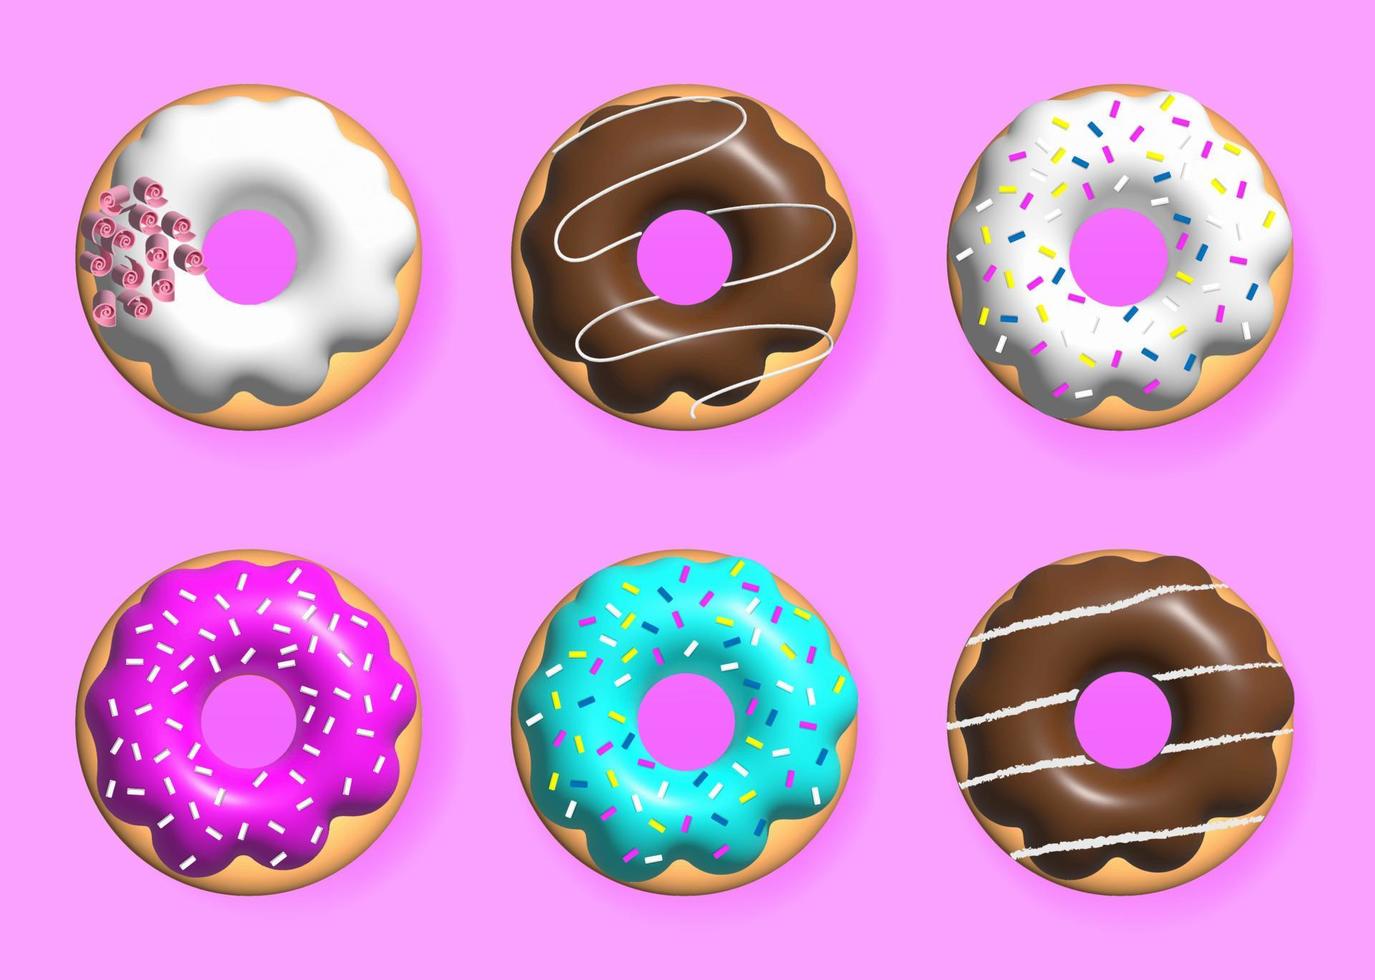 collezione di ciambelle 3d realistica con immagini di condimenti colorati, ciambelle. set di cupcakes colorati smaltati 3d, illustrazione vettoriale